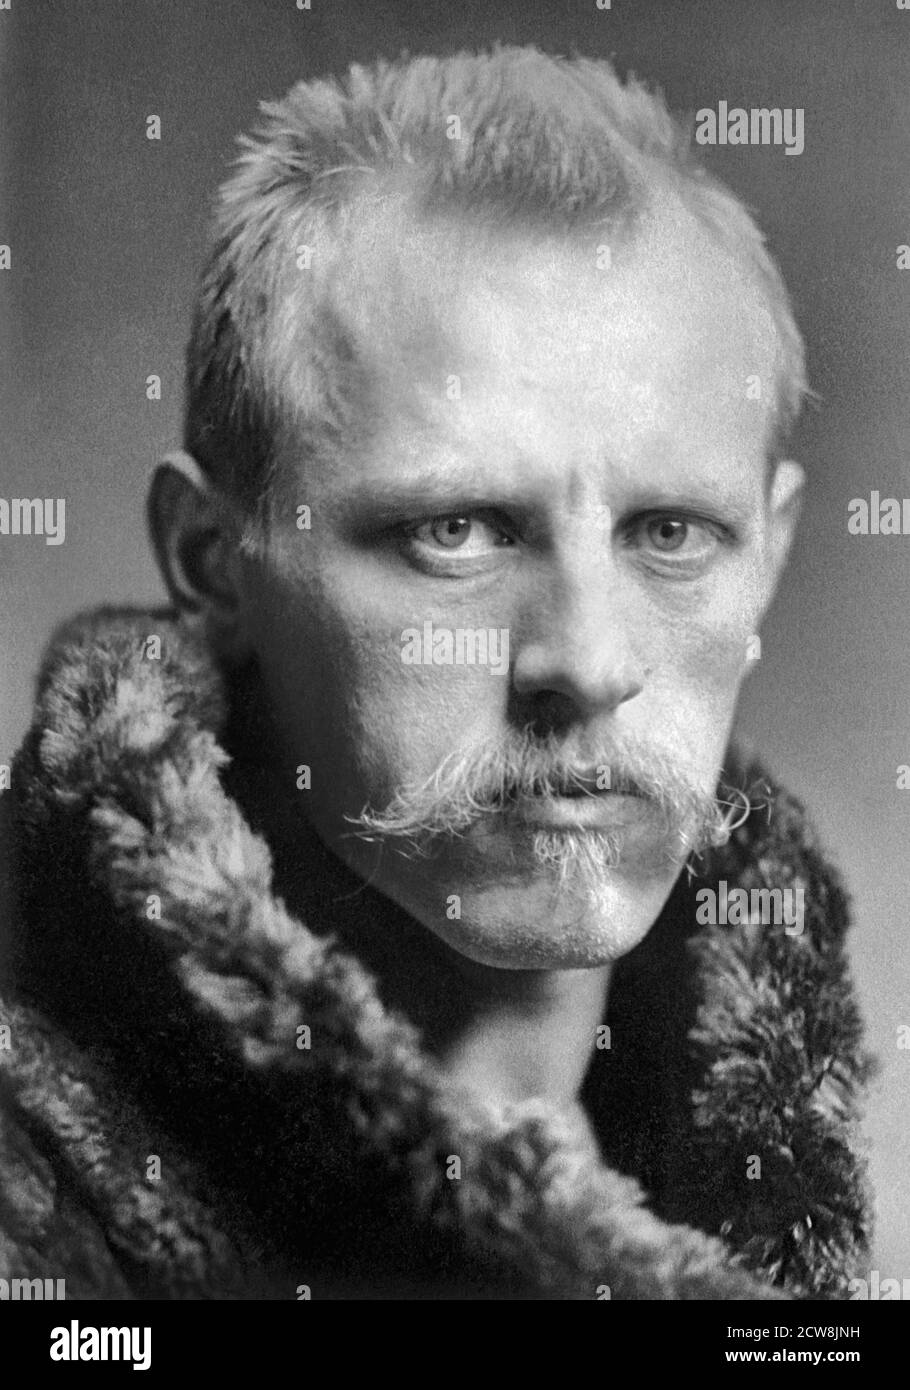 Fridtjof Nansen. Porträt des norwegischen Forschers, Wissenschaftlers, Diplomaten, humanitären und Friedensnobelpreisträgers Fridtjof Wedel-Jarlsberg Nansen (1861-1930) von Henry Van der Weyde Stockfoto